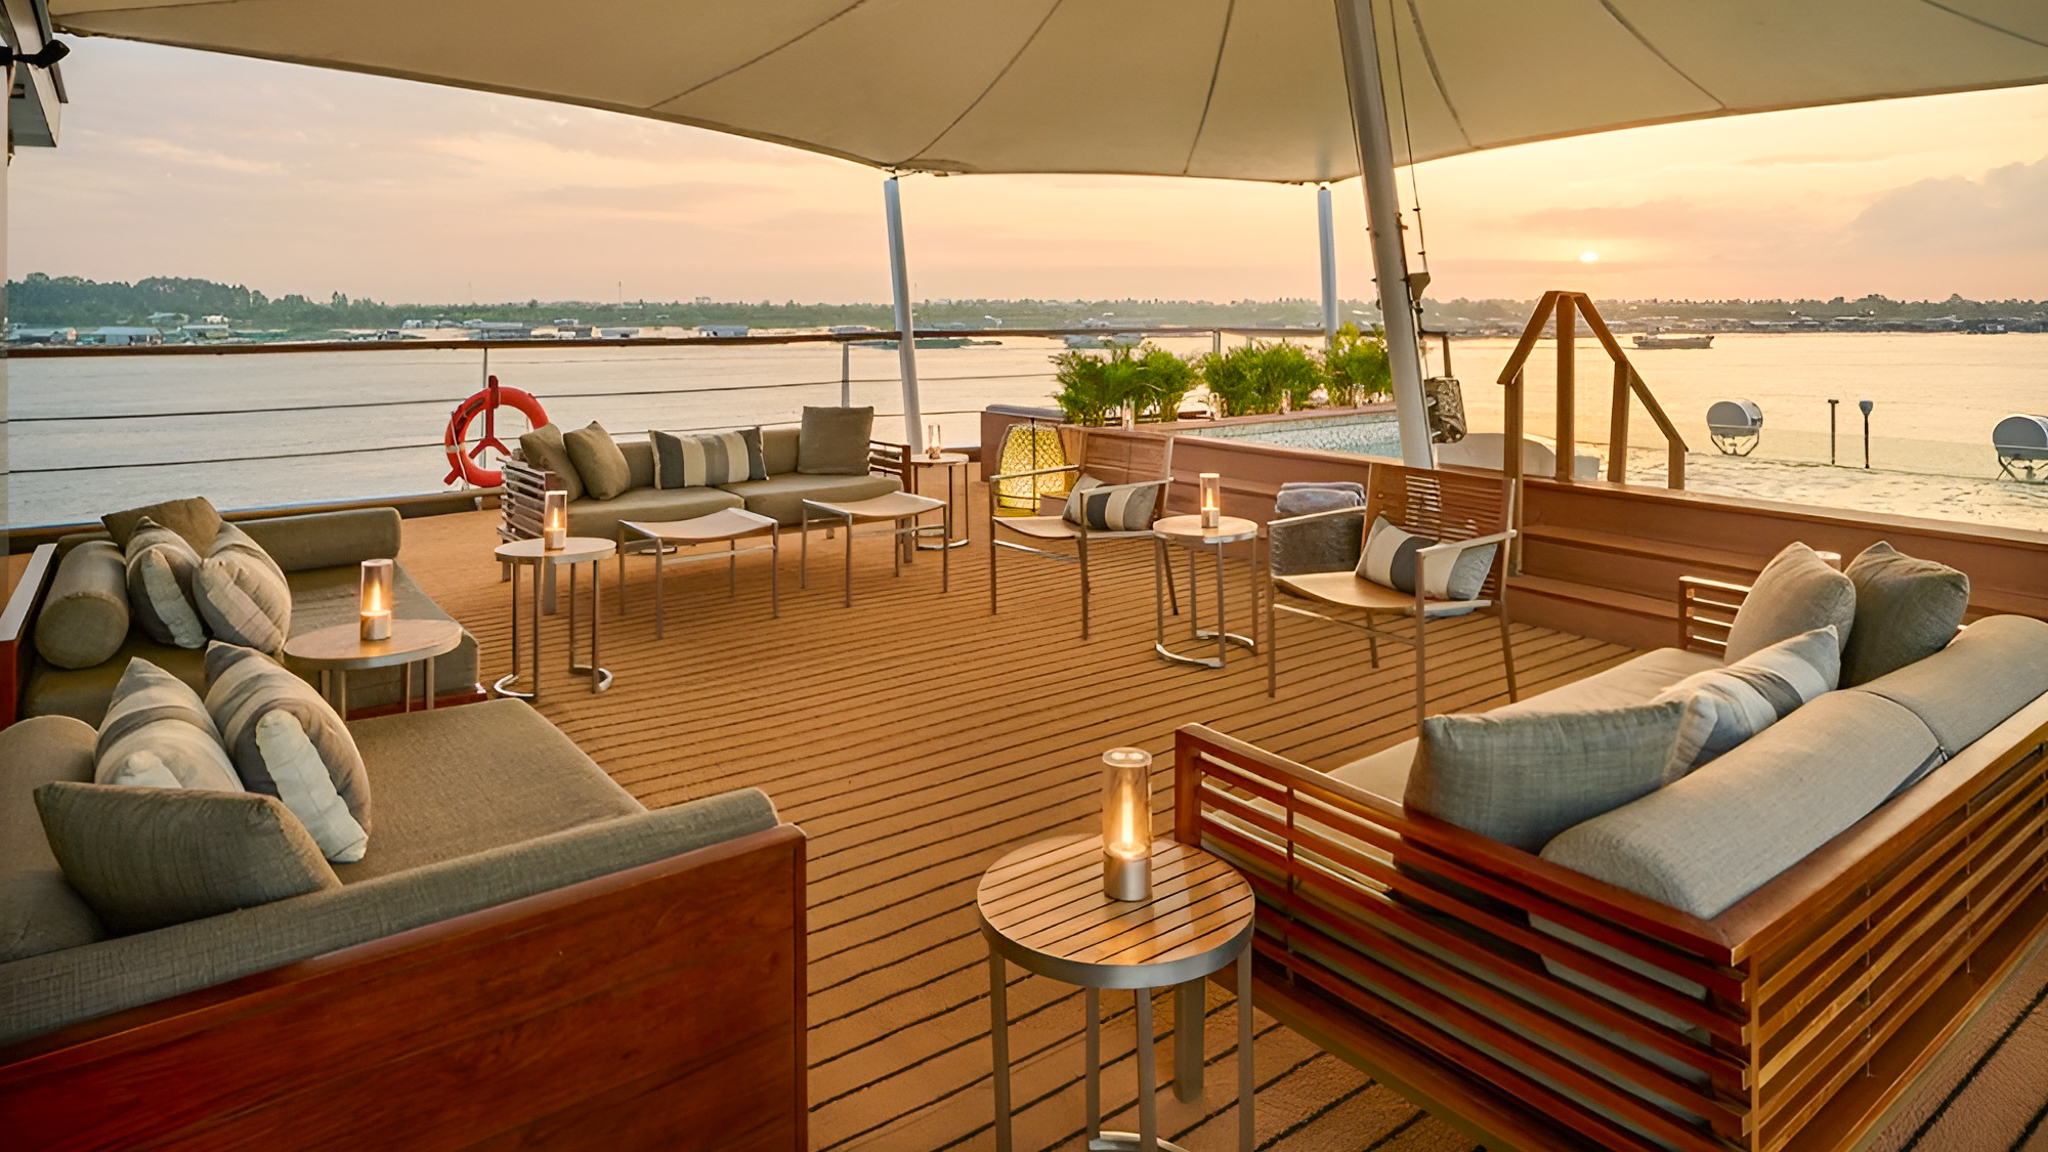 Luxury Lounge Overwatch Mekong River